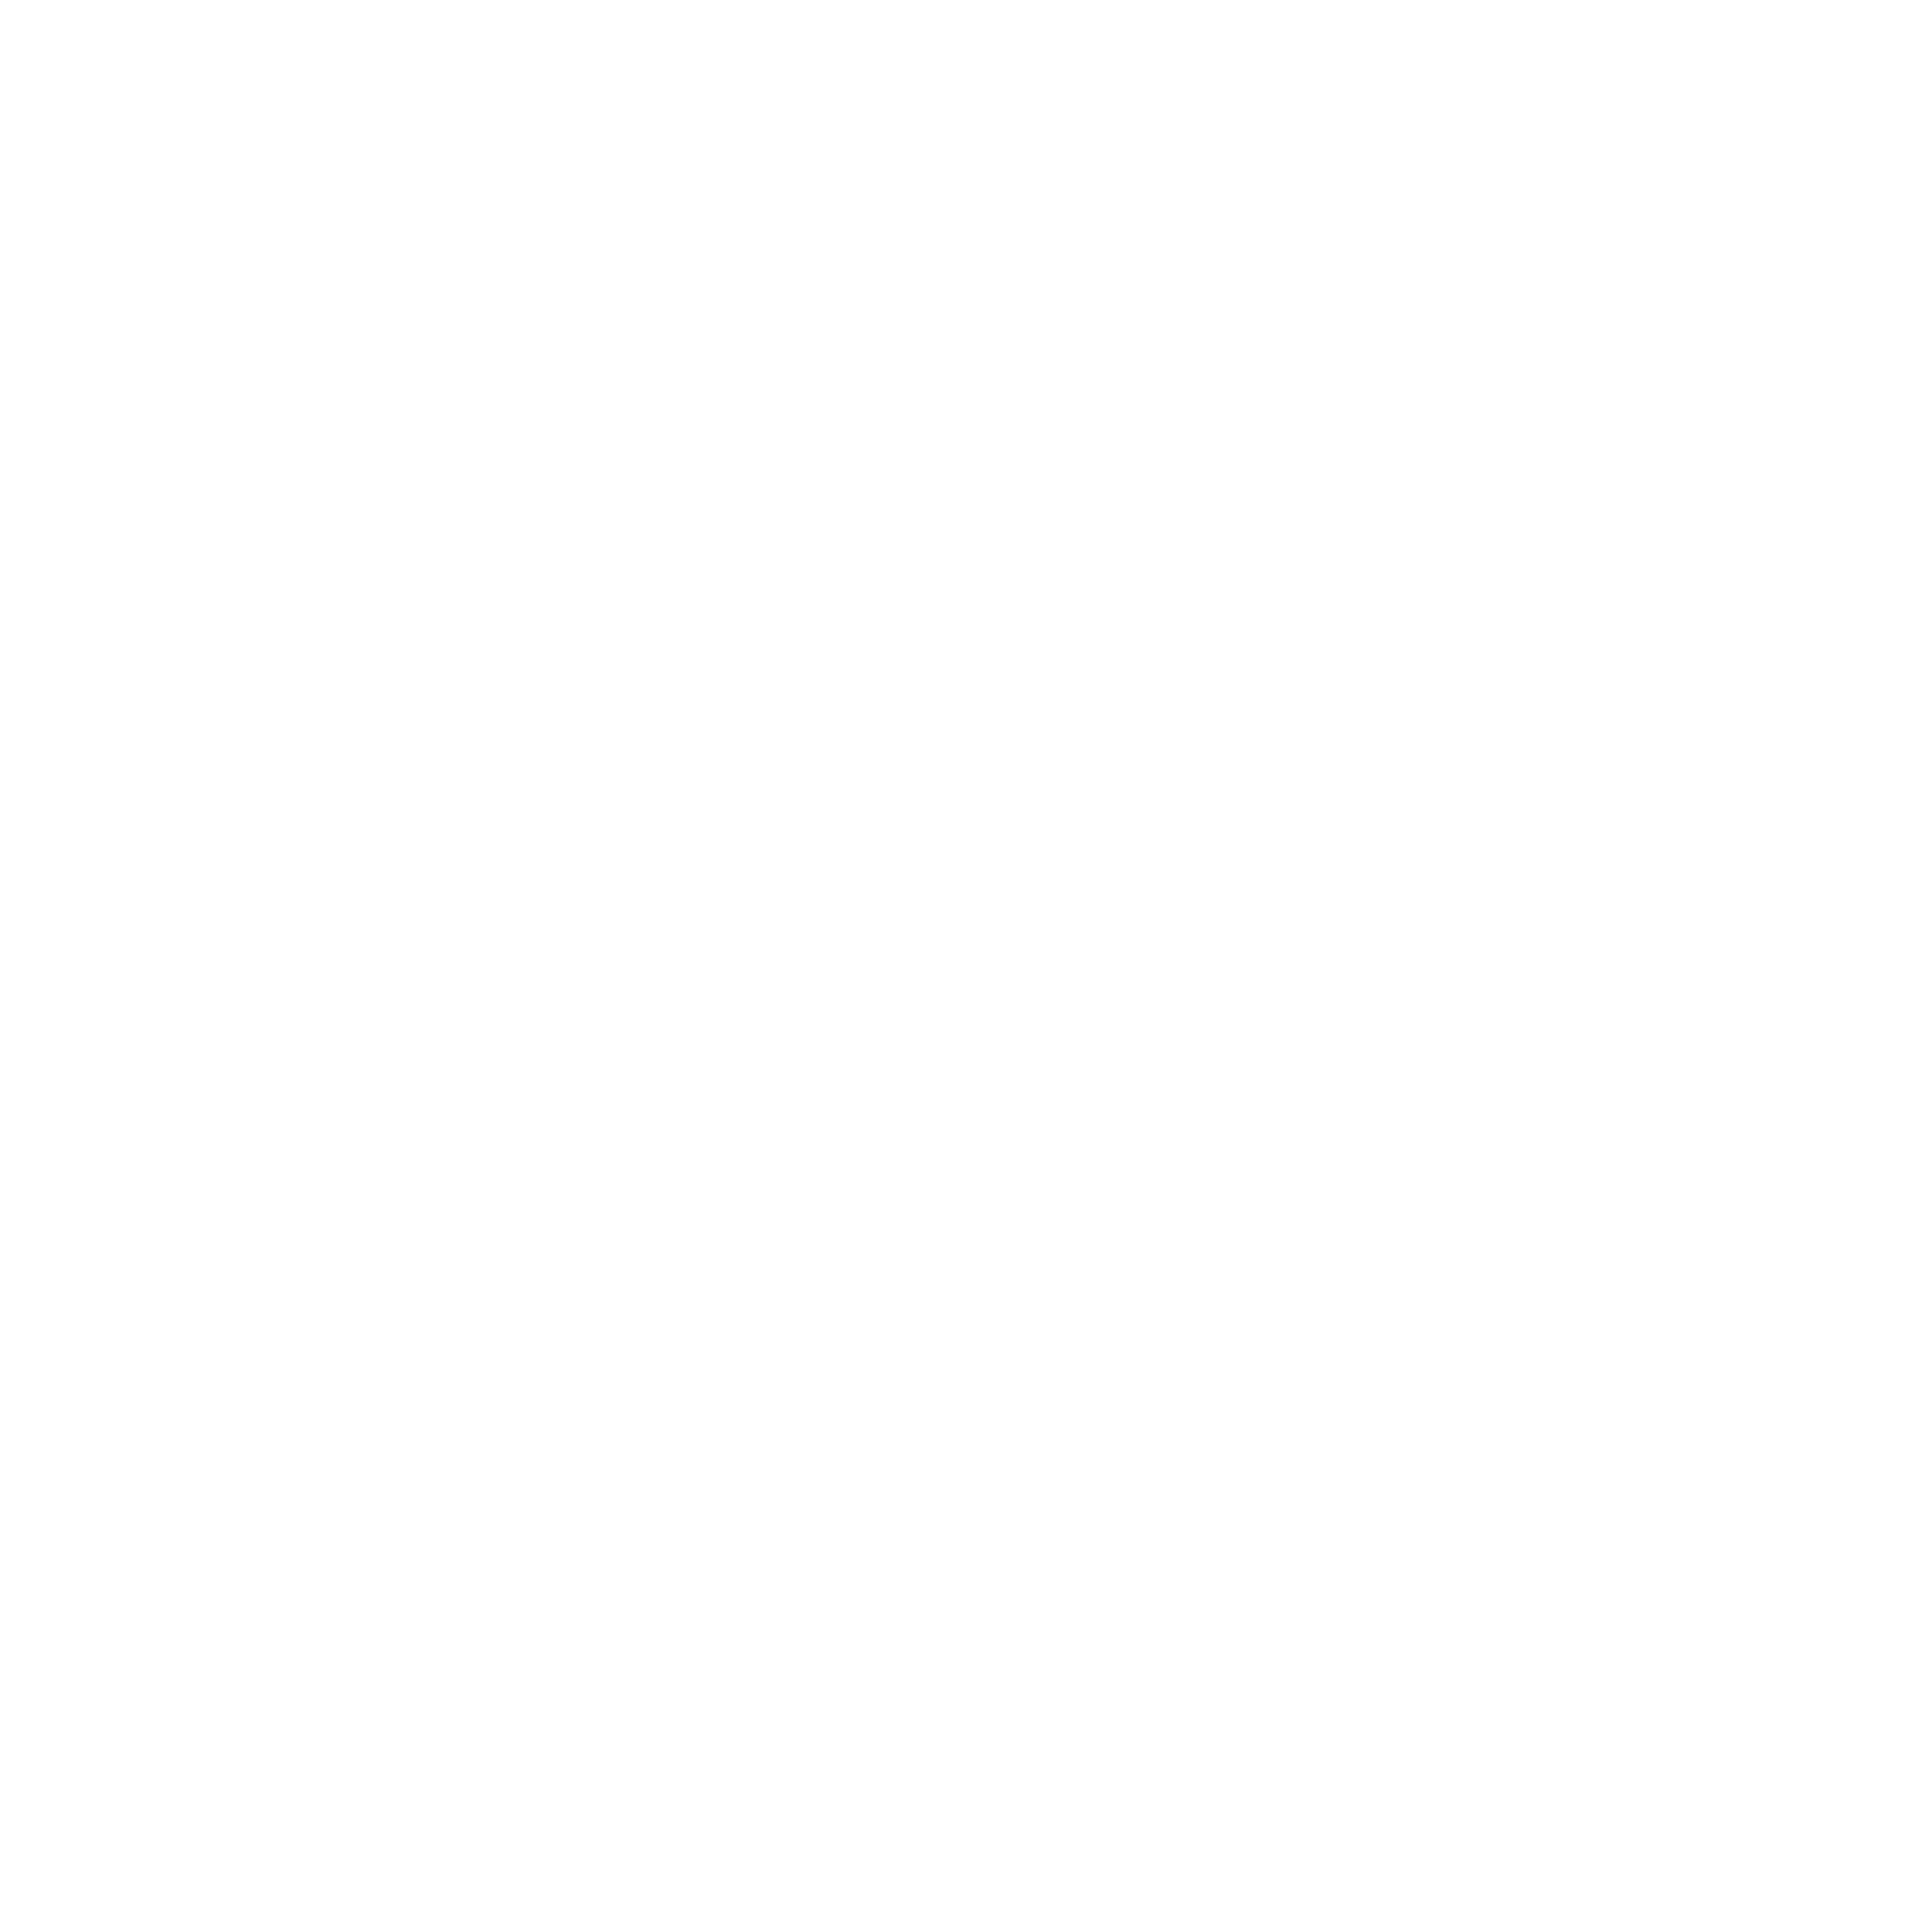 Bowden Bradley